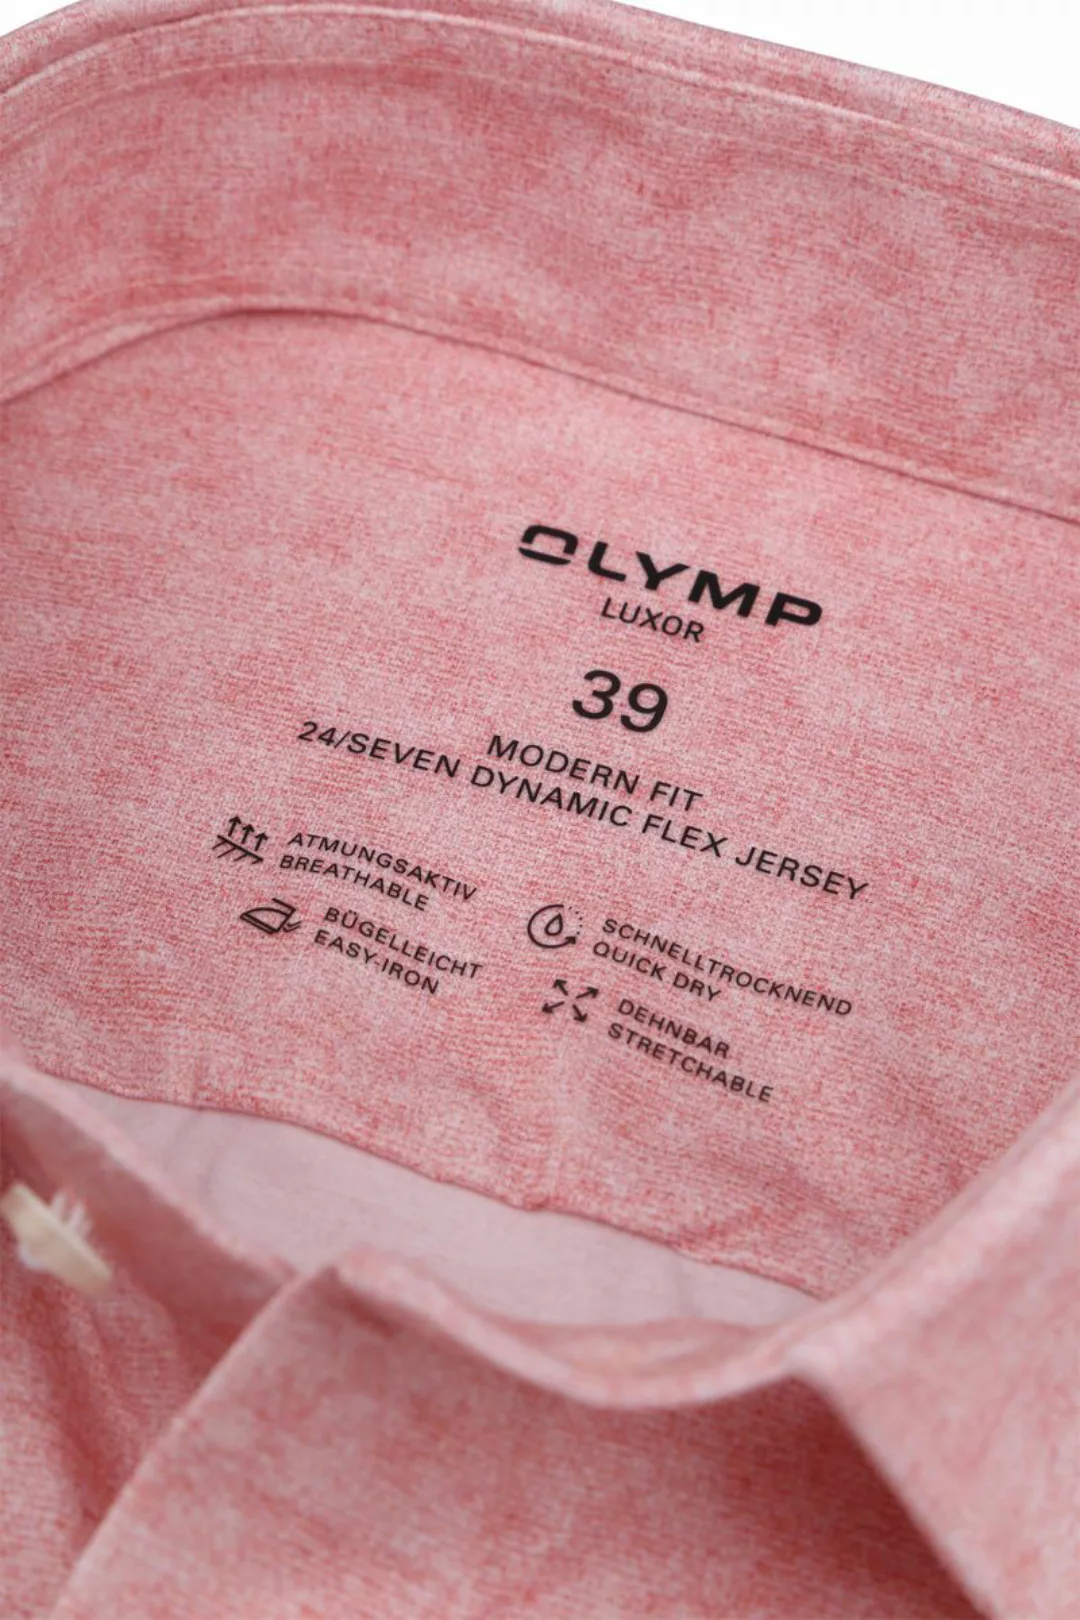 OLYMP Luxor Hemd Stretch Rosa - Größe 42 günstig online kaufen